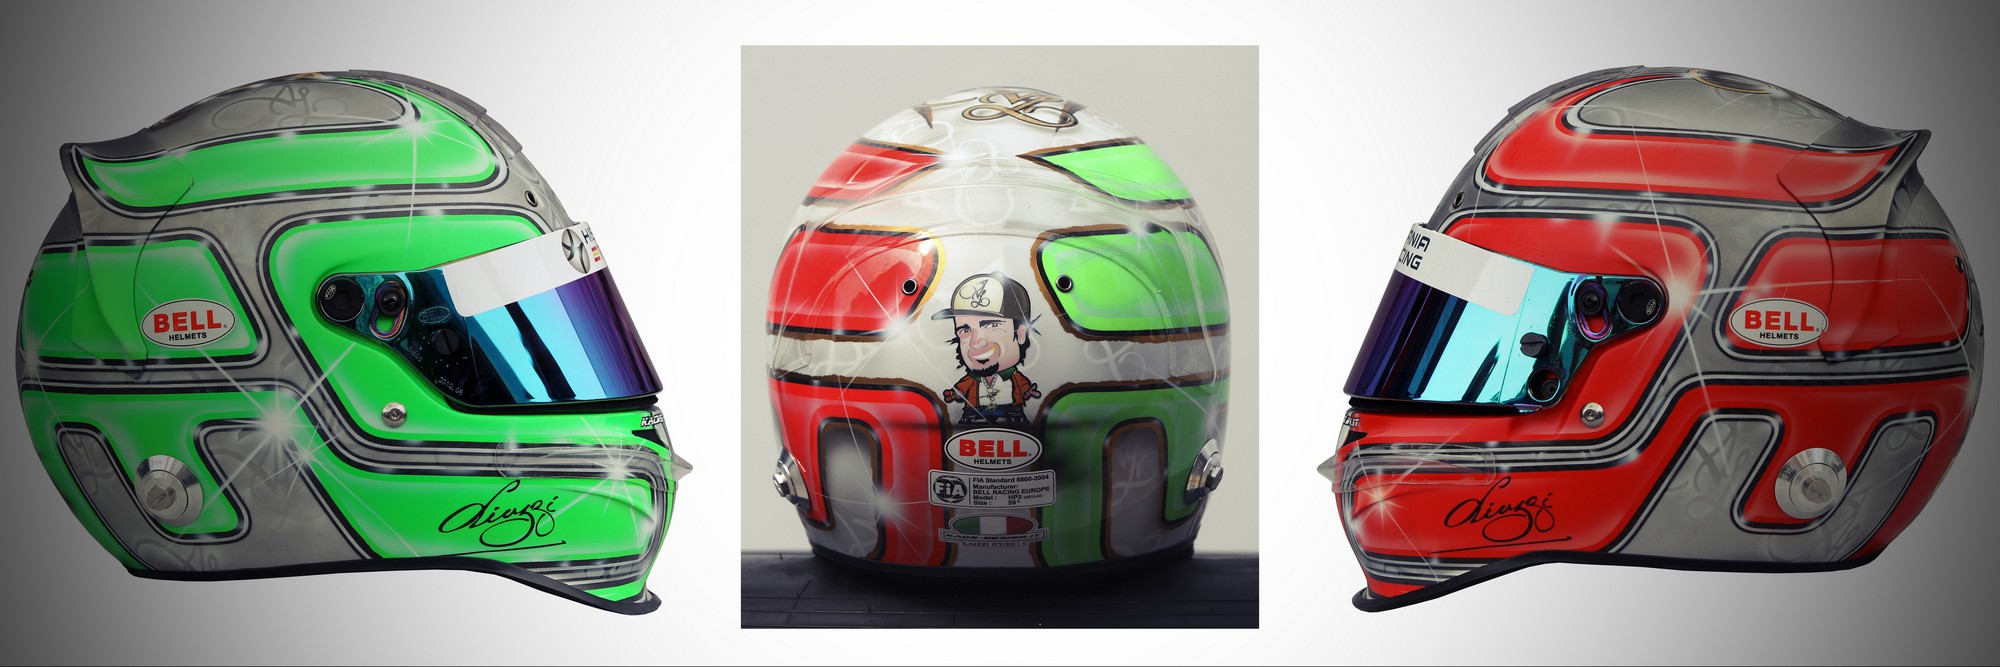 Шлем Витантонио Лиуцци на сезон 2011 года | 2011 helmet of Vitantonio Liuzzi